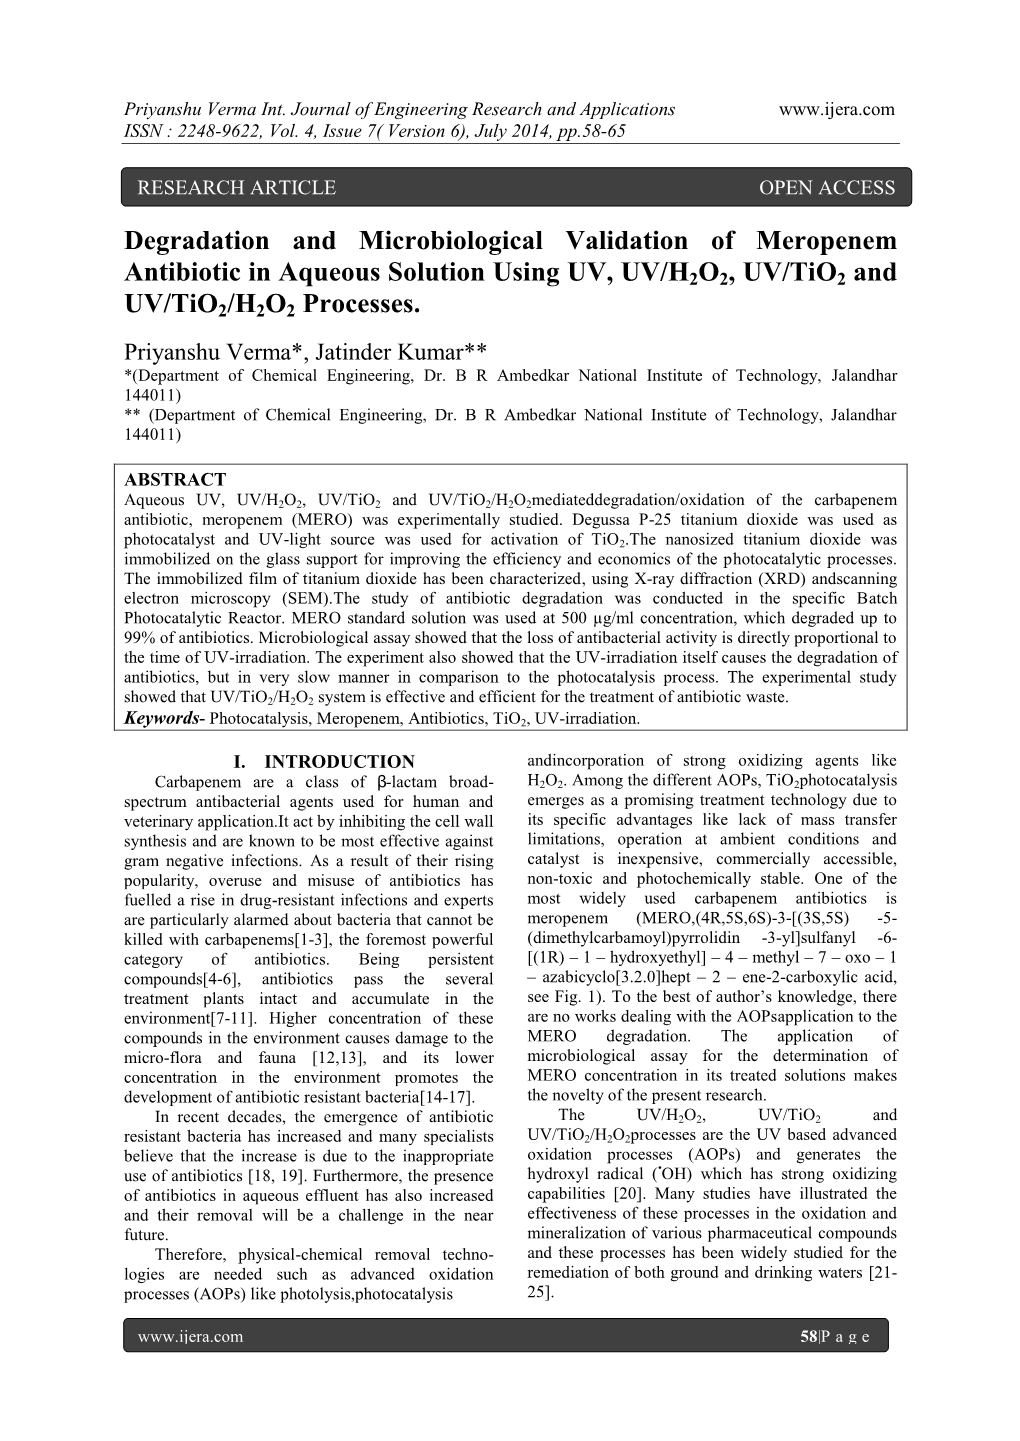 Degradation and Microbiological Validation of Meropenem Antibiotic in Aqueous Solution Using UV, UV/H2O2, UV/Tio2 and UV/Tio2/H2O2 Processes